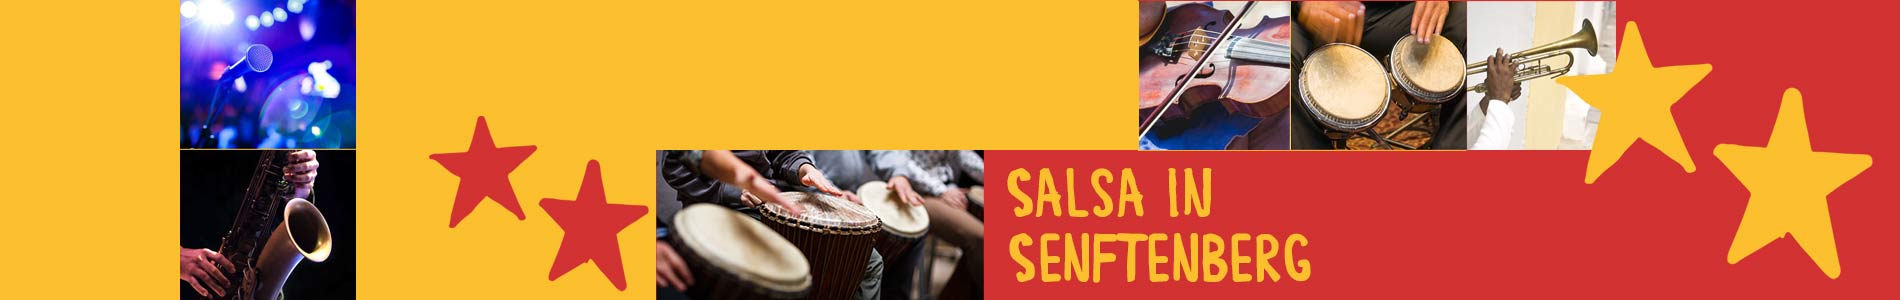 Salsa in Senftenberg – Salsa lernen und tanzen, Tanzkurse, Partys, Veranstaltungen